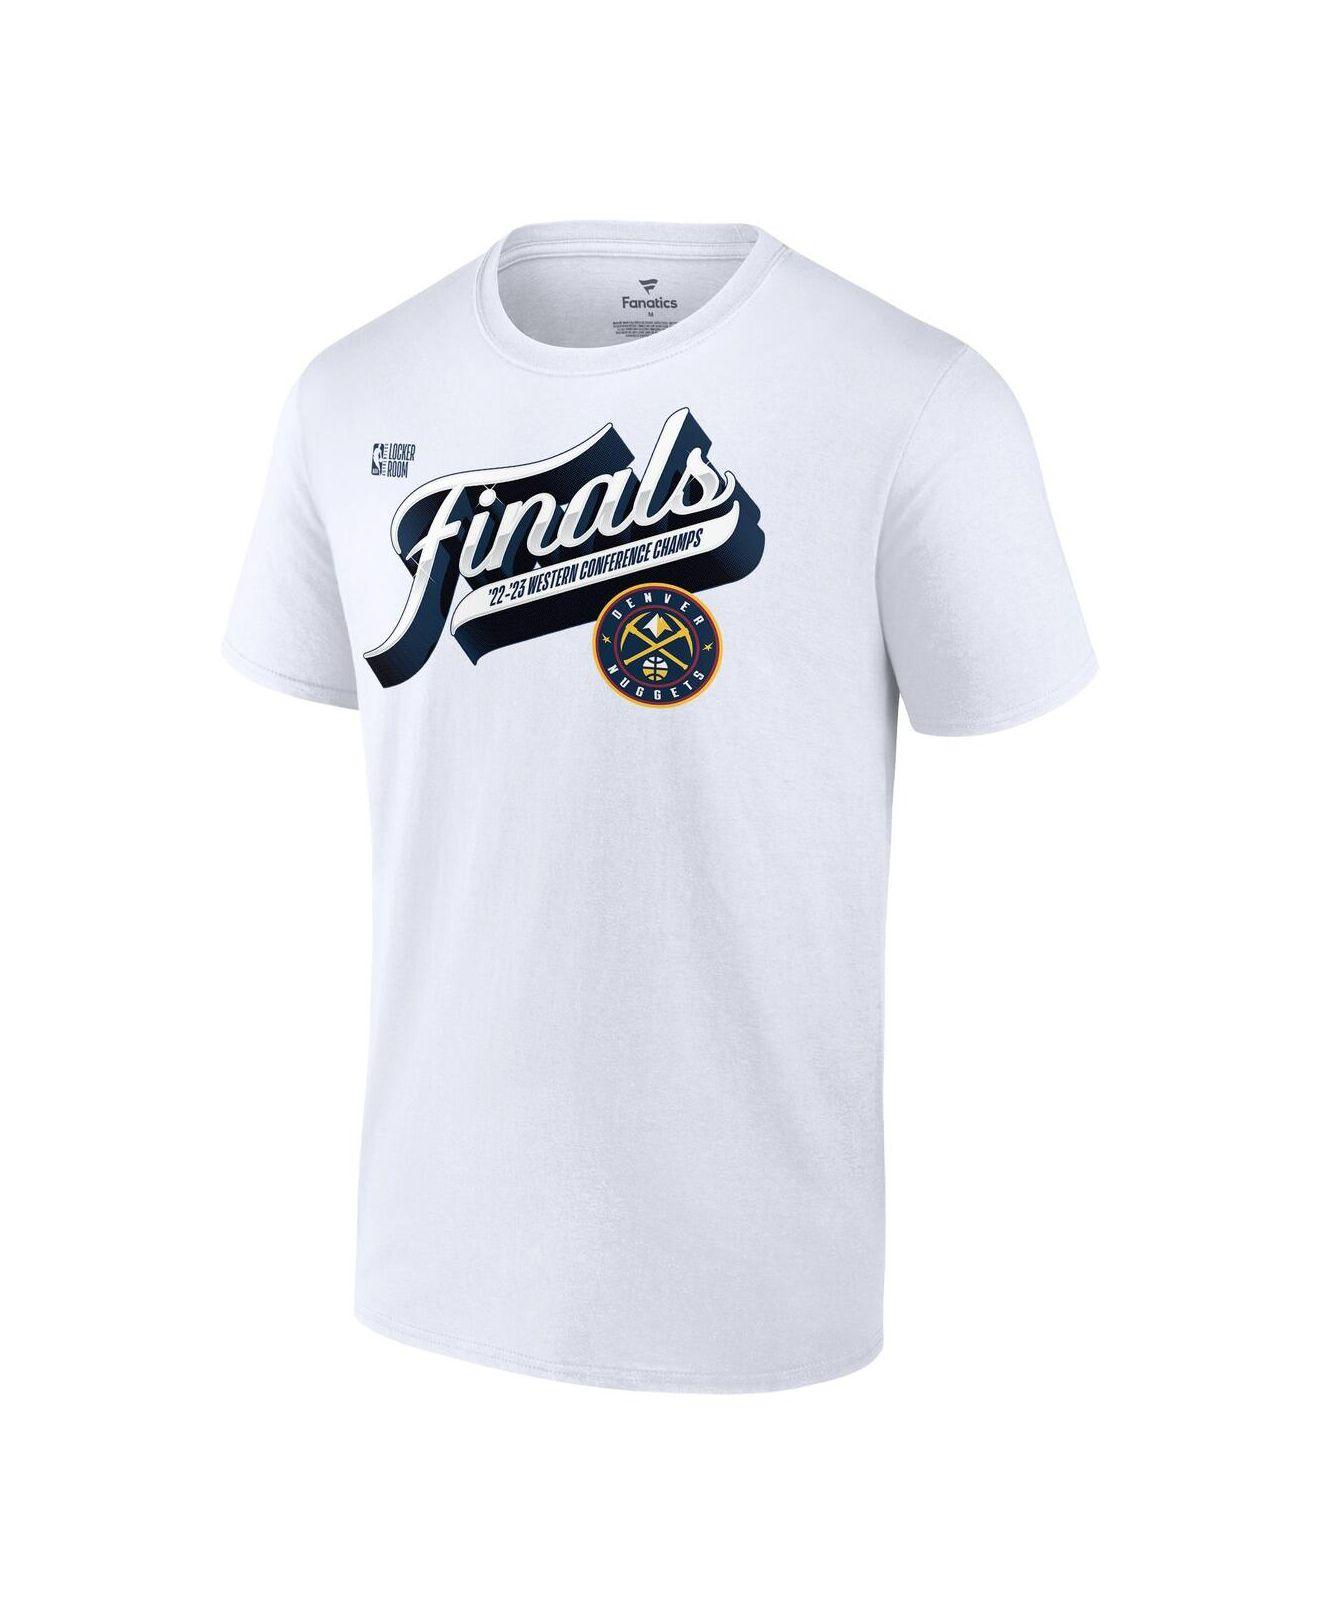 Men's Atlanta Braves Fanatics Branded Navy 2021 NL East Division Champions  Locker Room T-Shirt